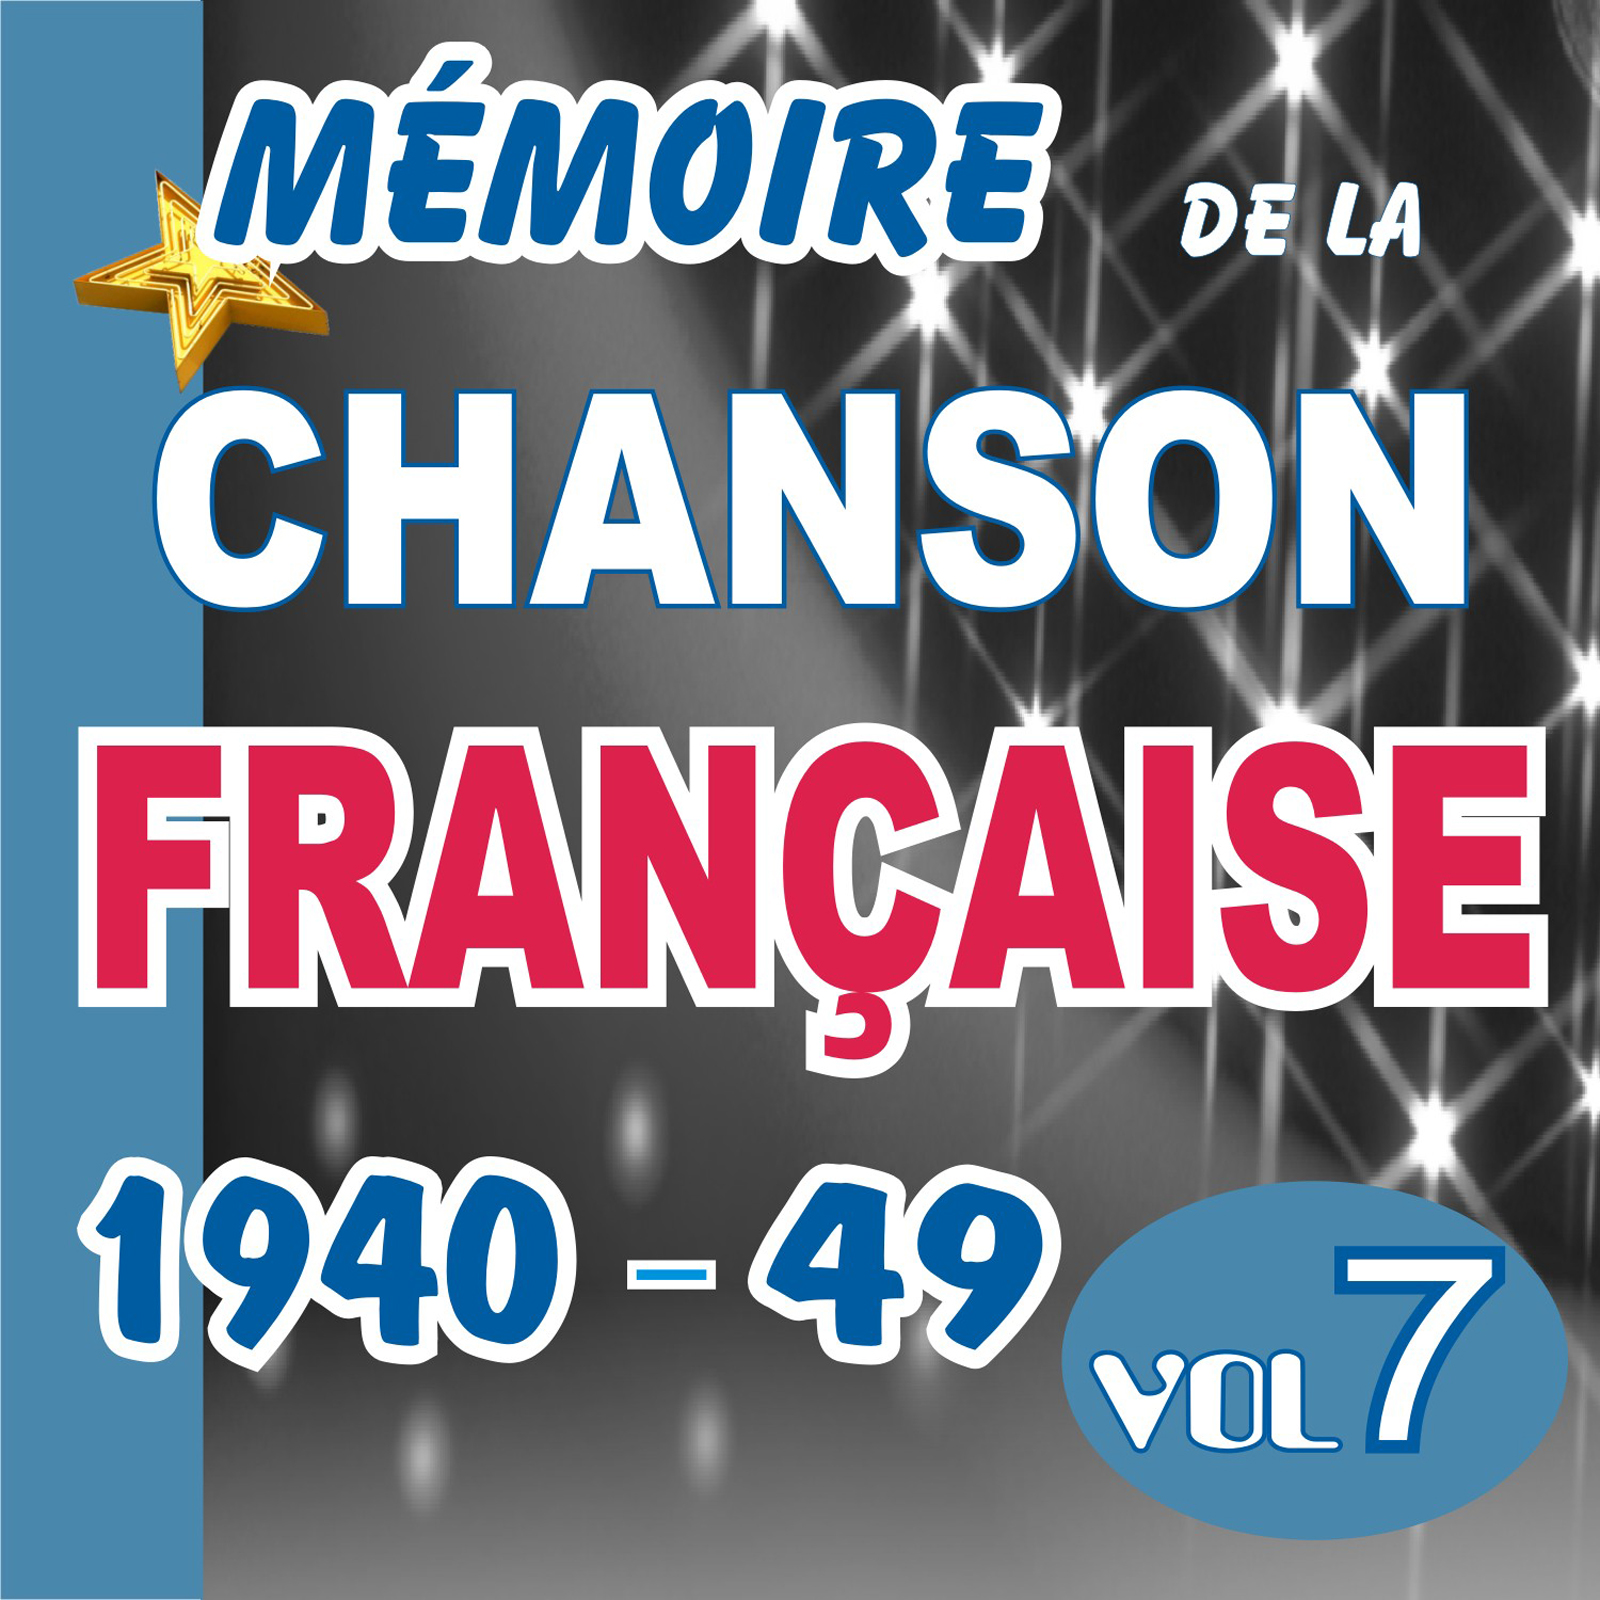 MEMOIRE DE LA CHANSON FRANCAISE DE 1940 A 1949 - VOL 7